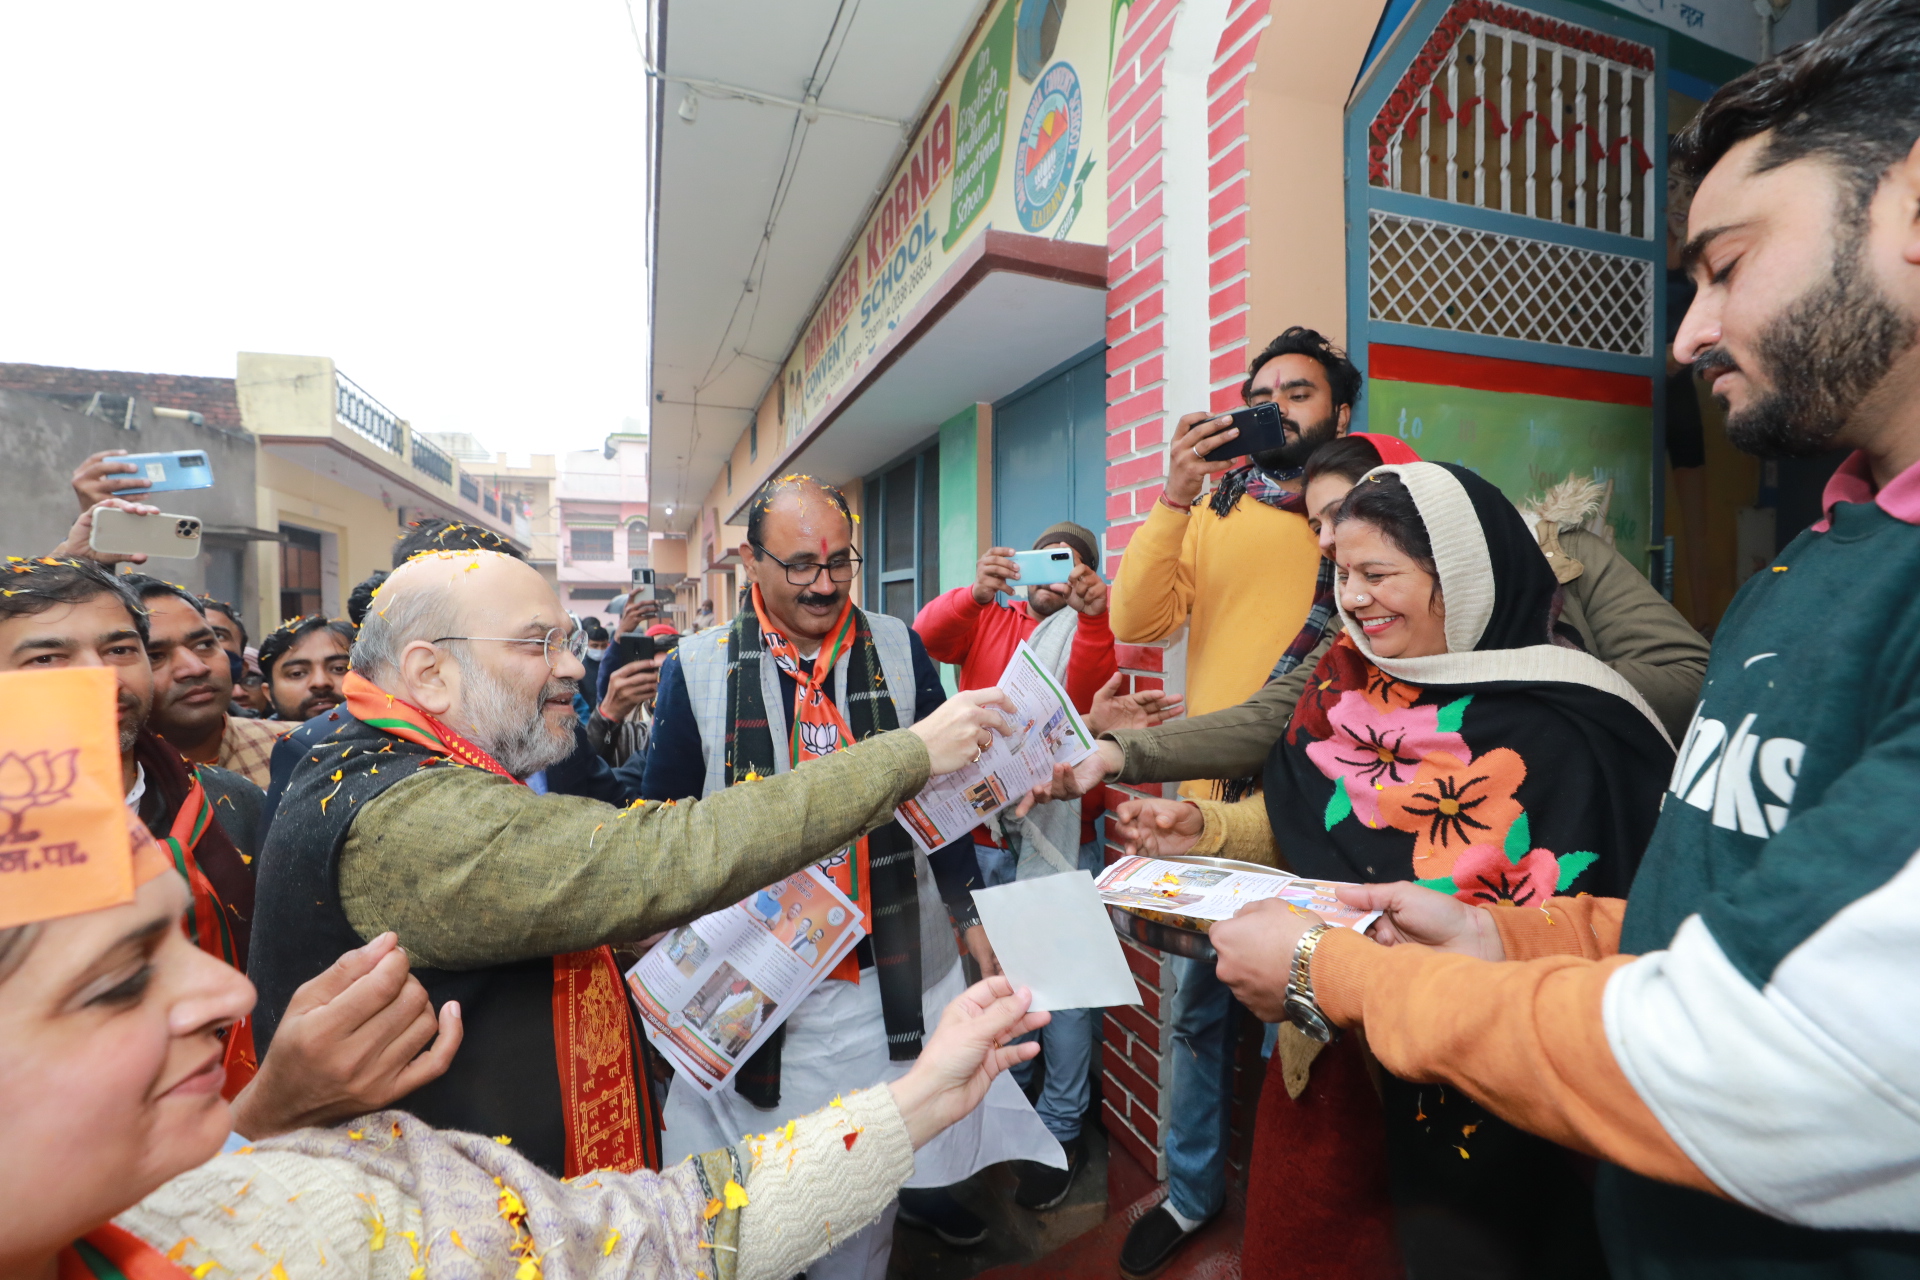 UttarPradesh Elections 2022 : कैराना में अमित शाह ने किया घर-घर जनसंपर्क, लगे जय श्रीराम के नारे